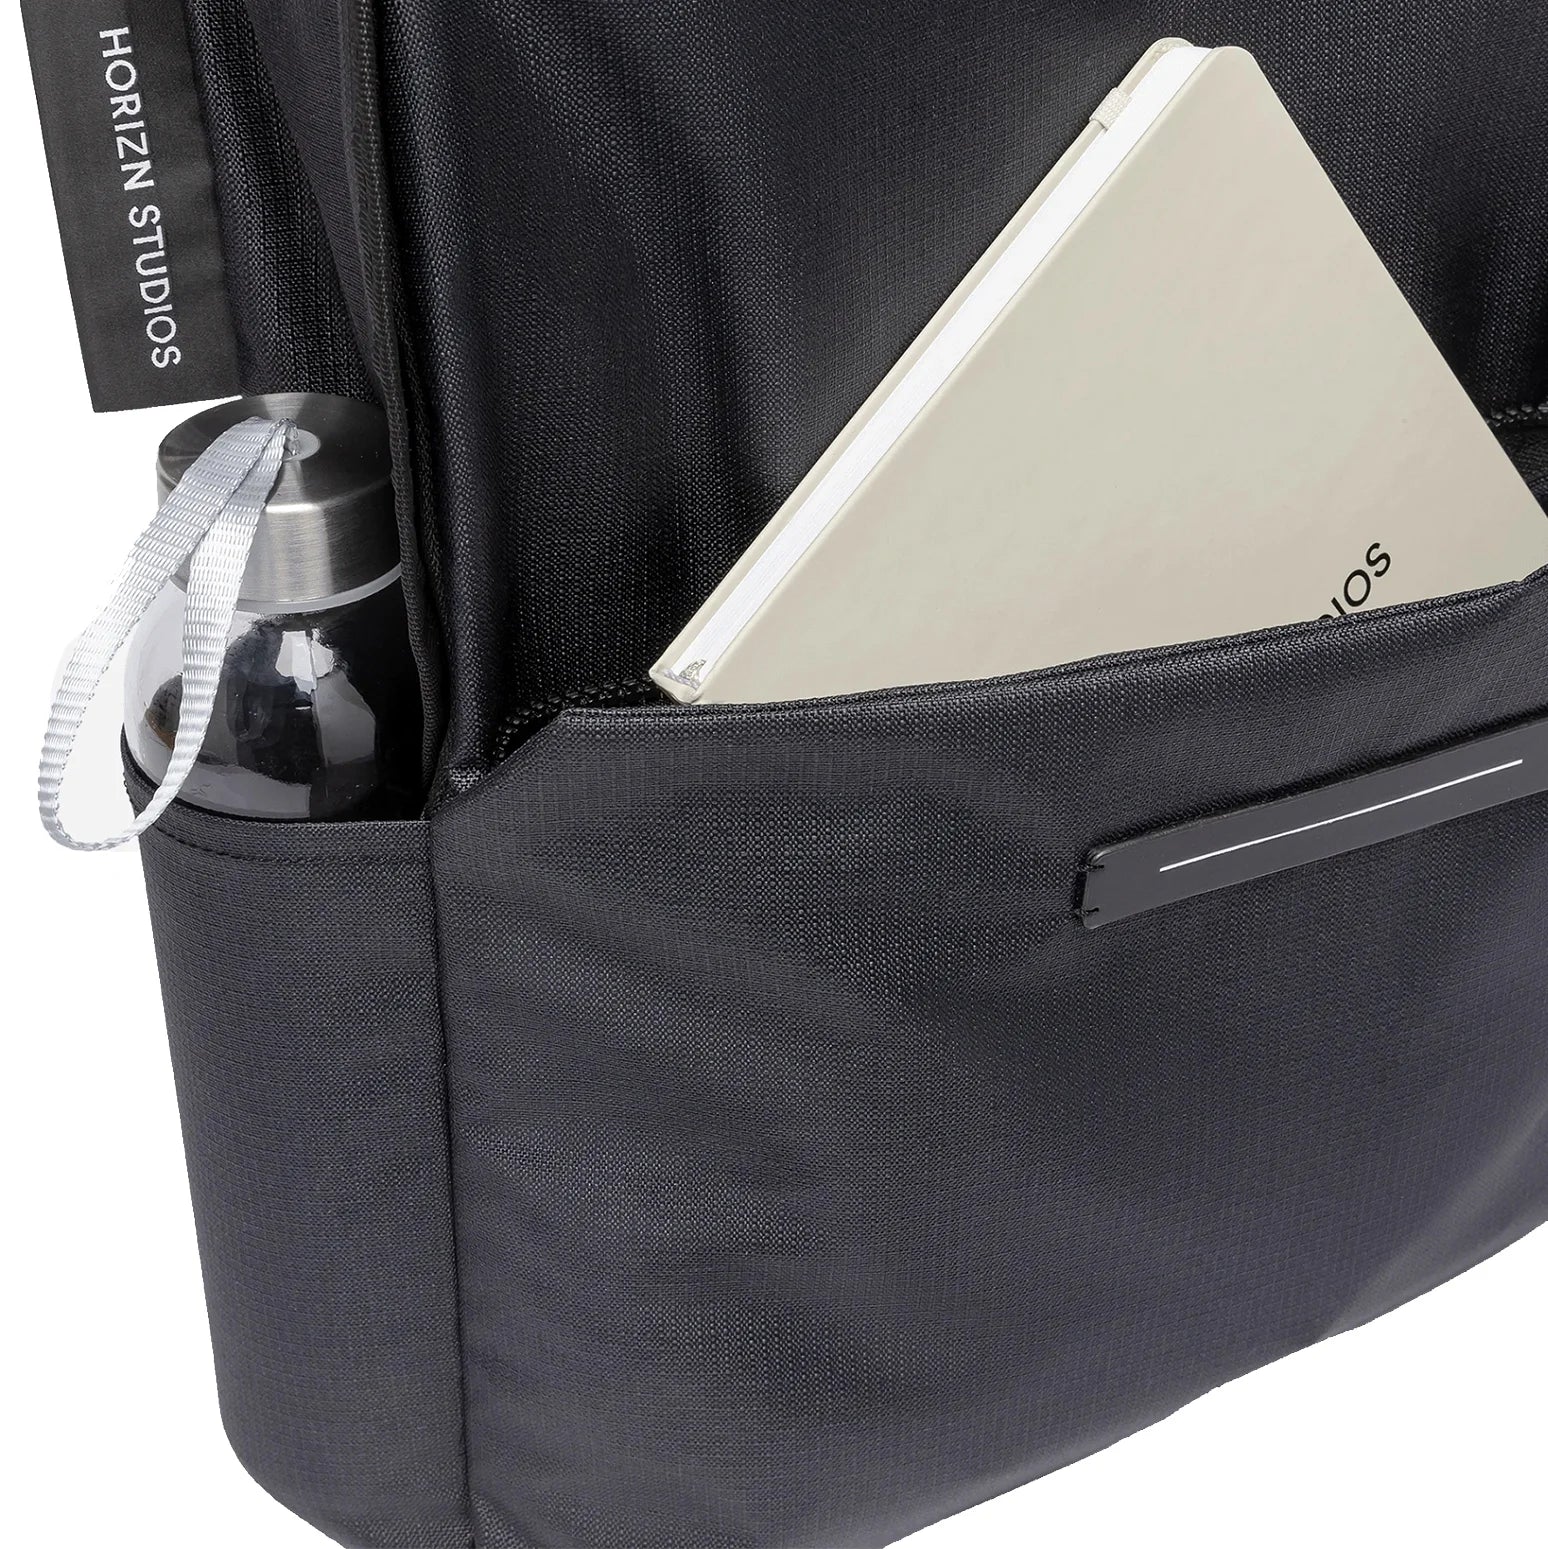 Horizn Studios Shibuya daypack backpack 44 cm - light quartz gray/glossy lemon